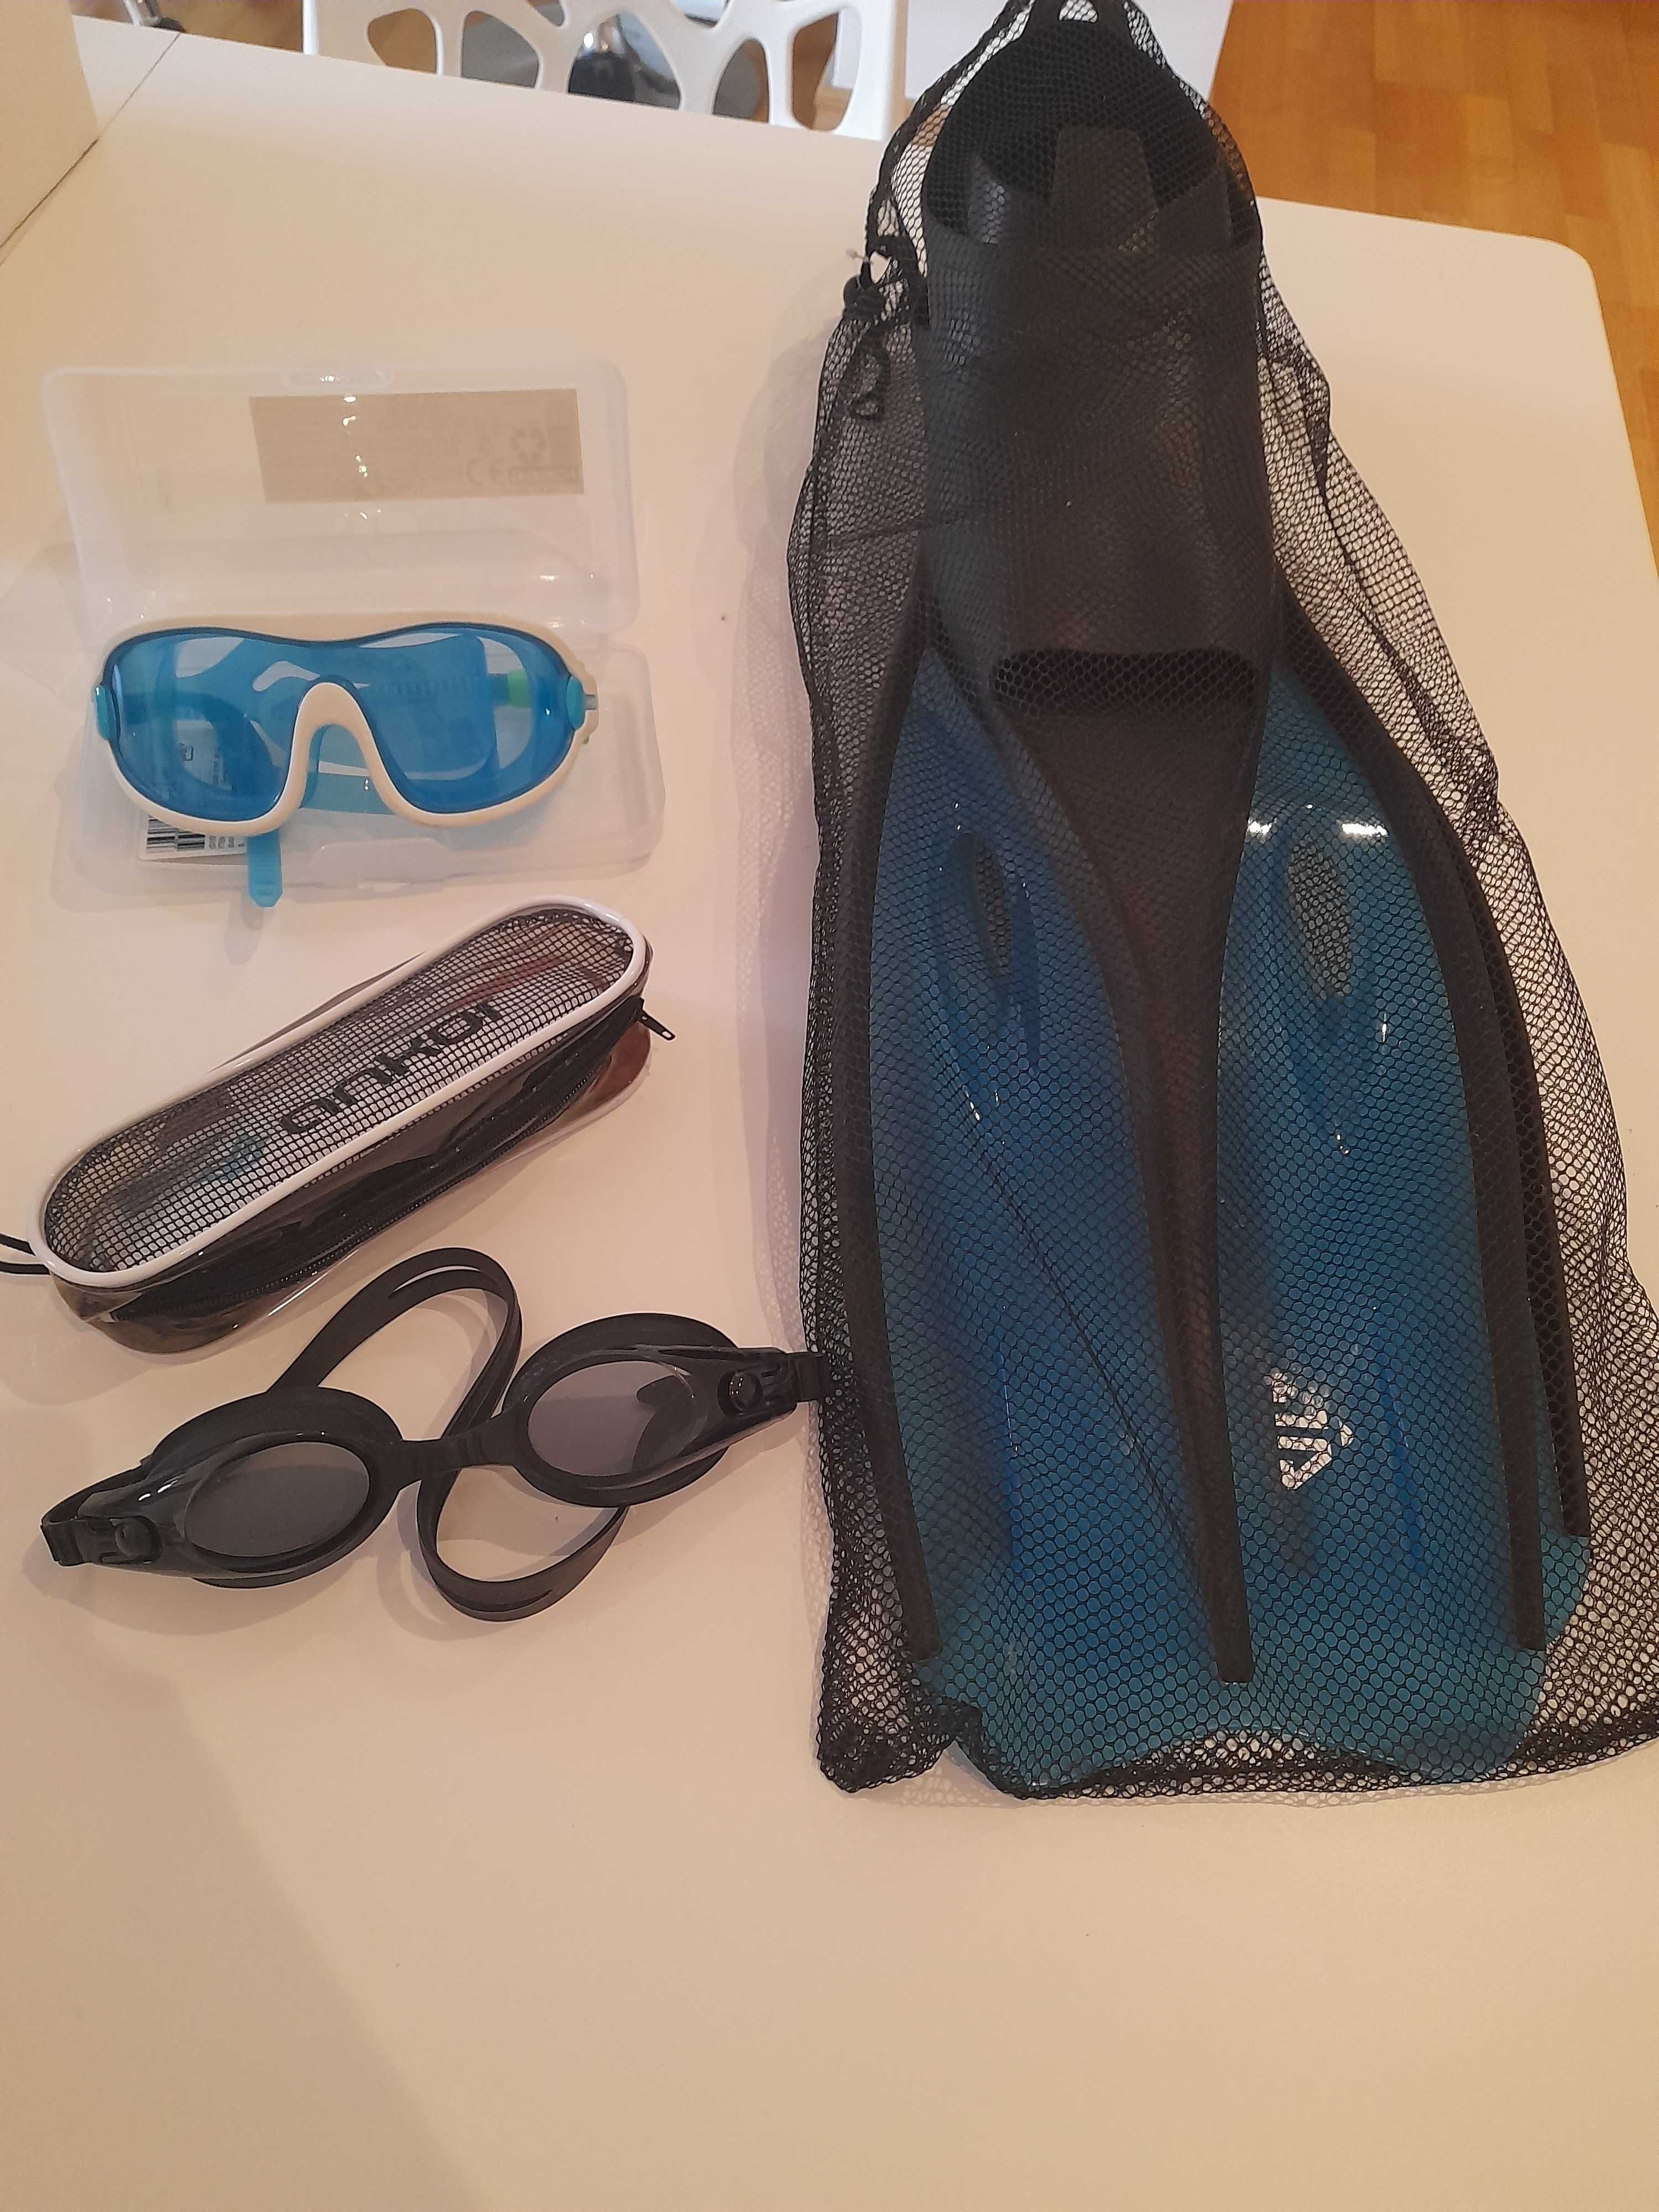 Barbatanas de natação/mergulho - Adulto XXL nunca usado e dois óculos